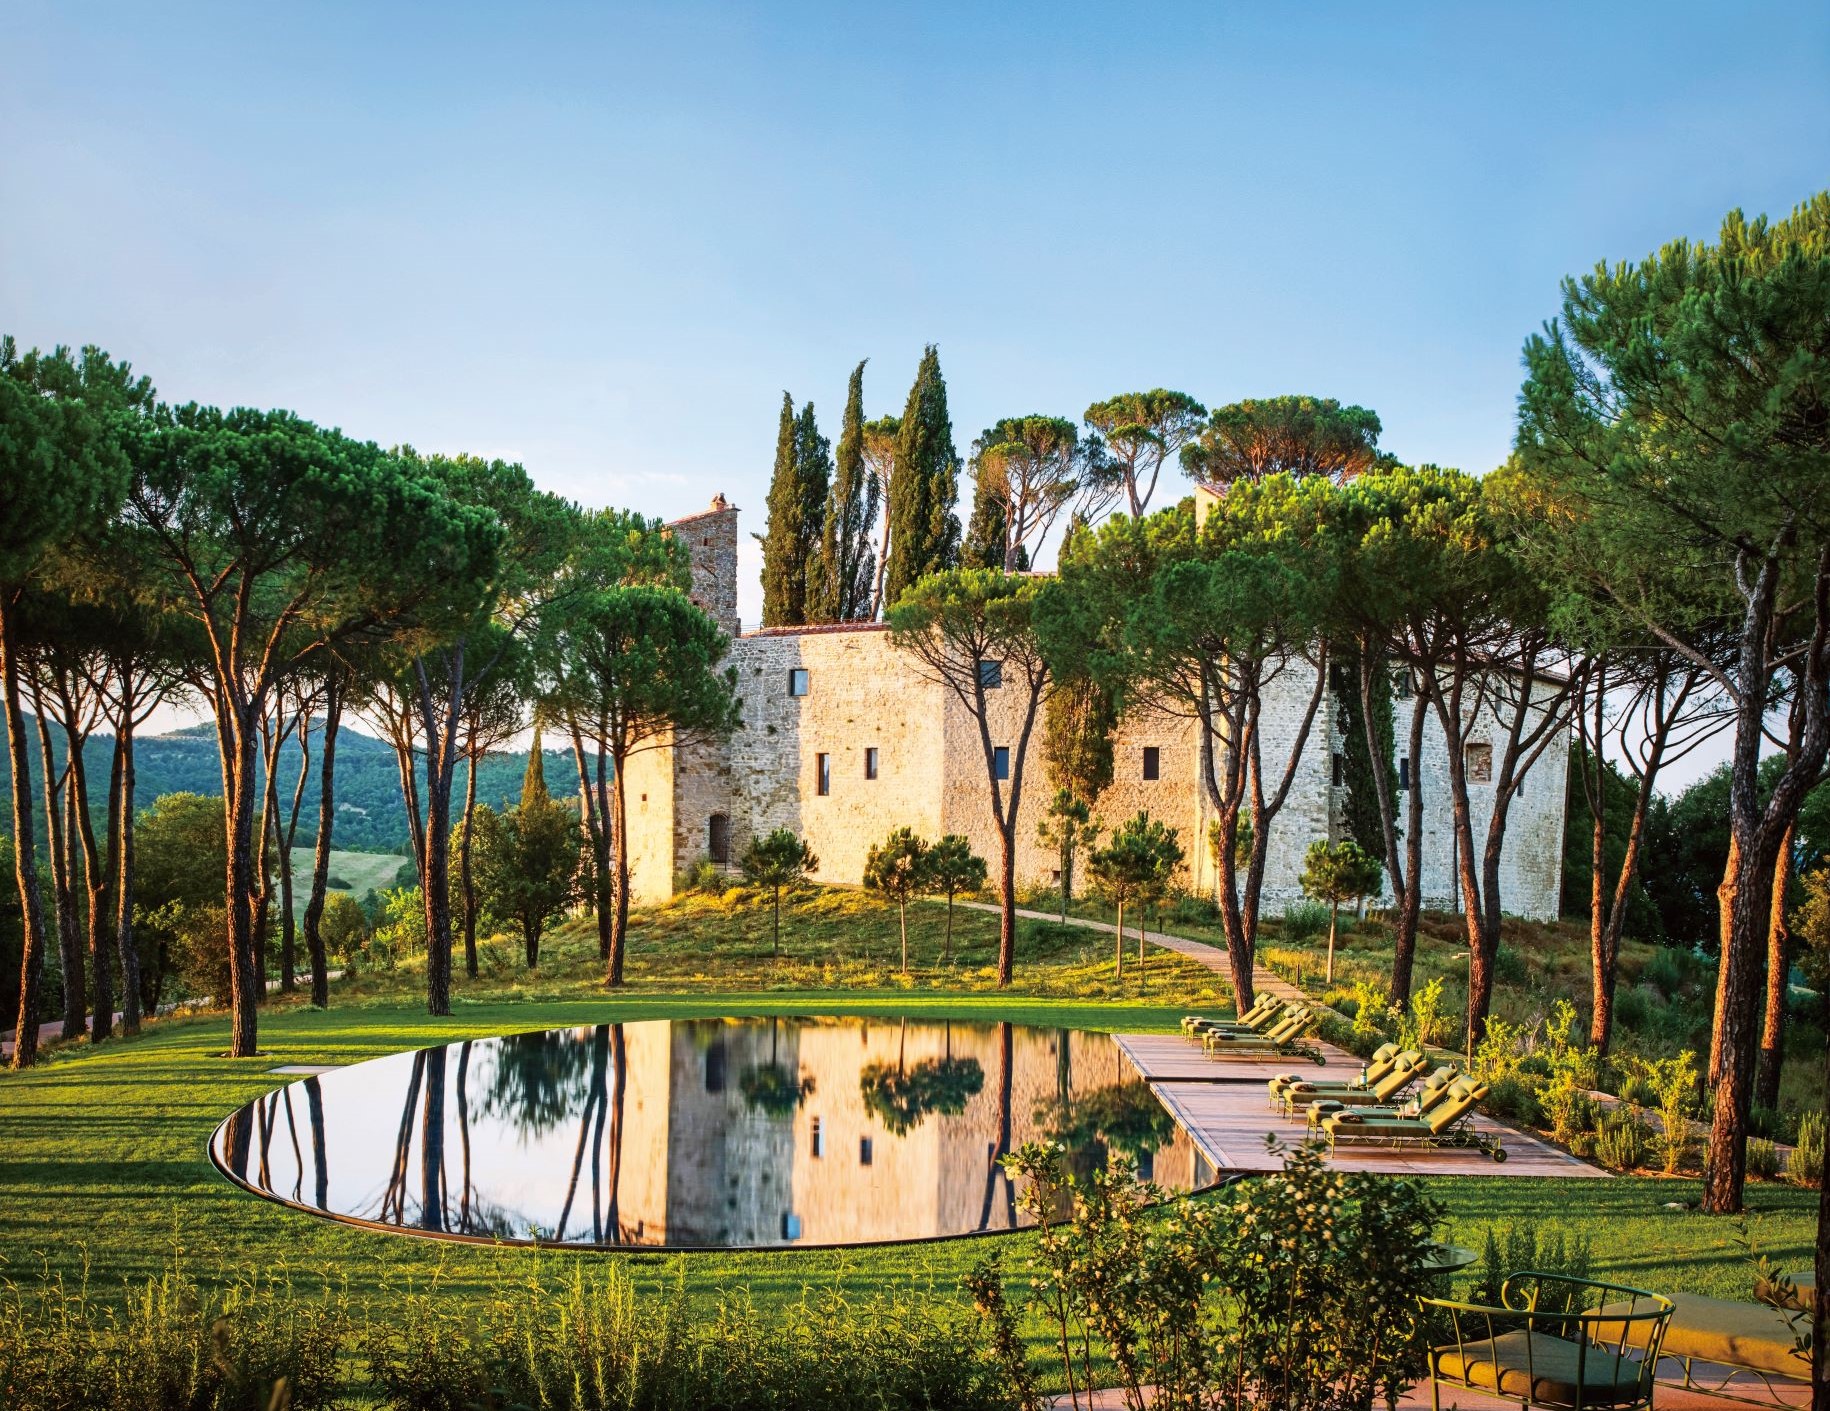 鑲在草坪上的露天泳池像一大面水鏡，映照著 Castello di Reschio 的永恆與美好。